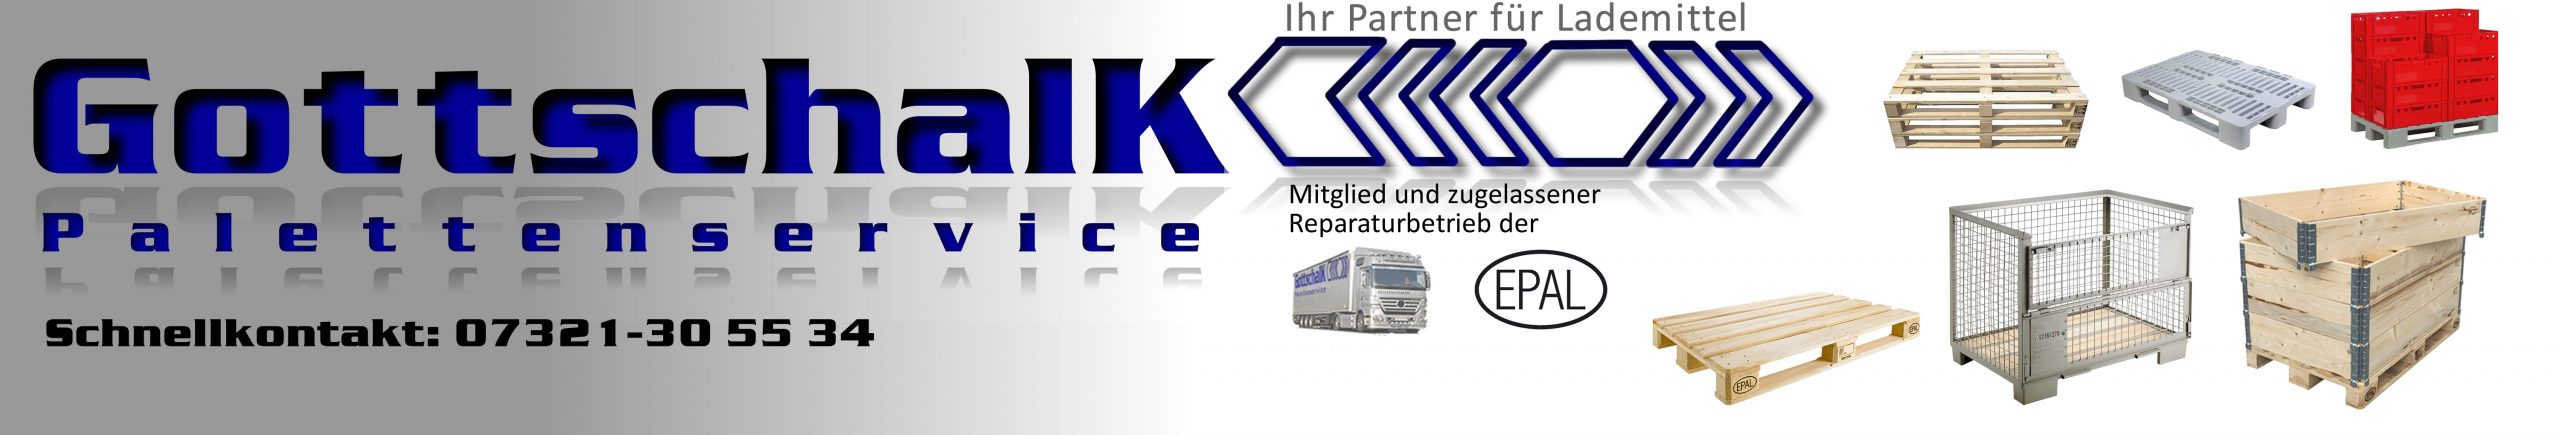 Gottschalk Palettenservice Logo Webseite